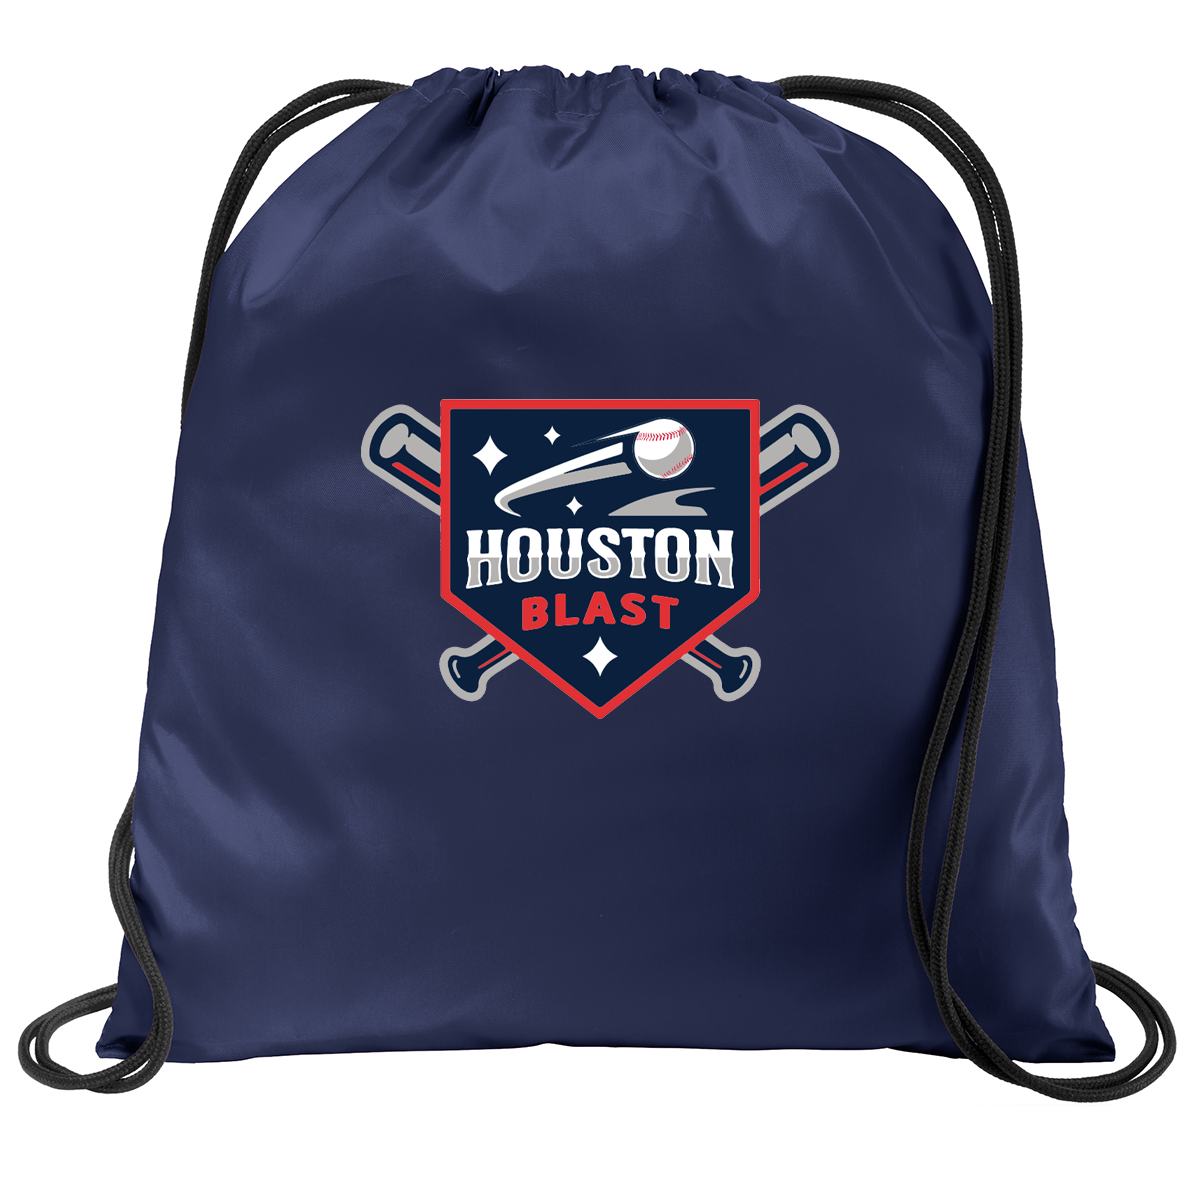 Houston Blast Baseball Cinch Pack